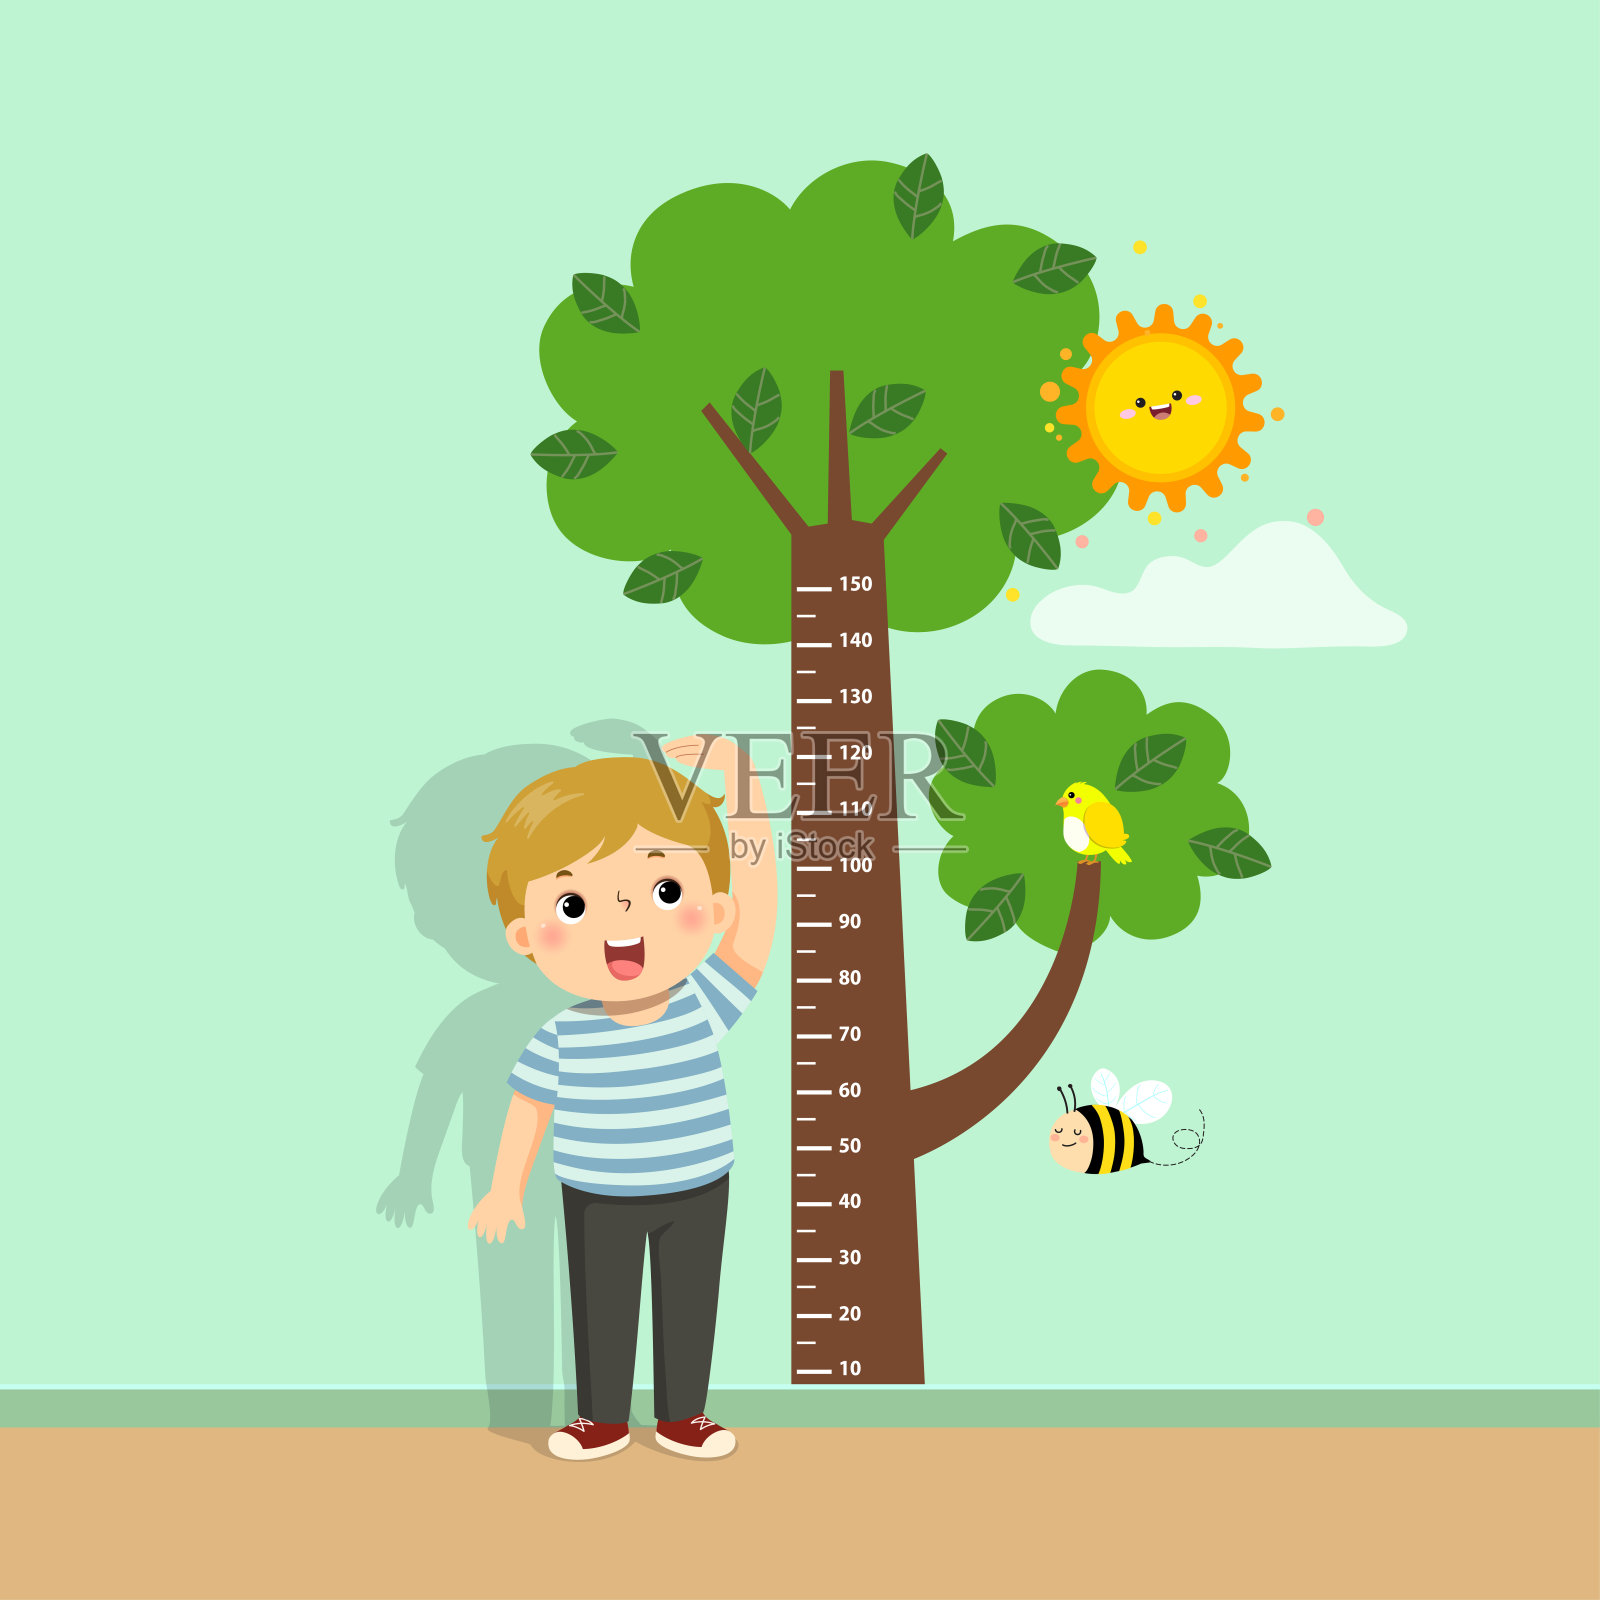 矢量插图可爱的卡通男孩测量他的高度与树的高度图表在墙上。插画图片素材